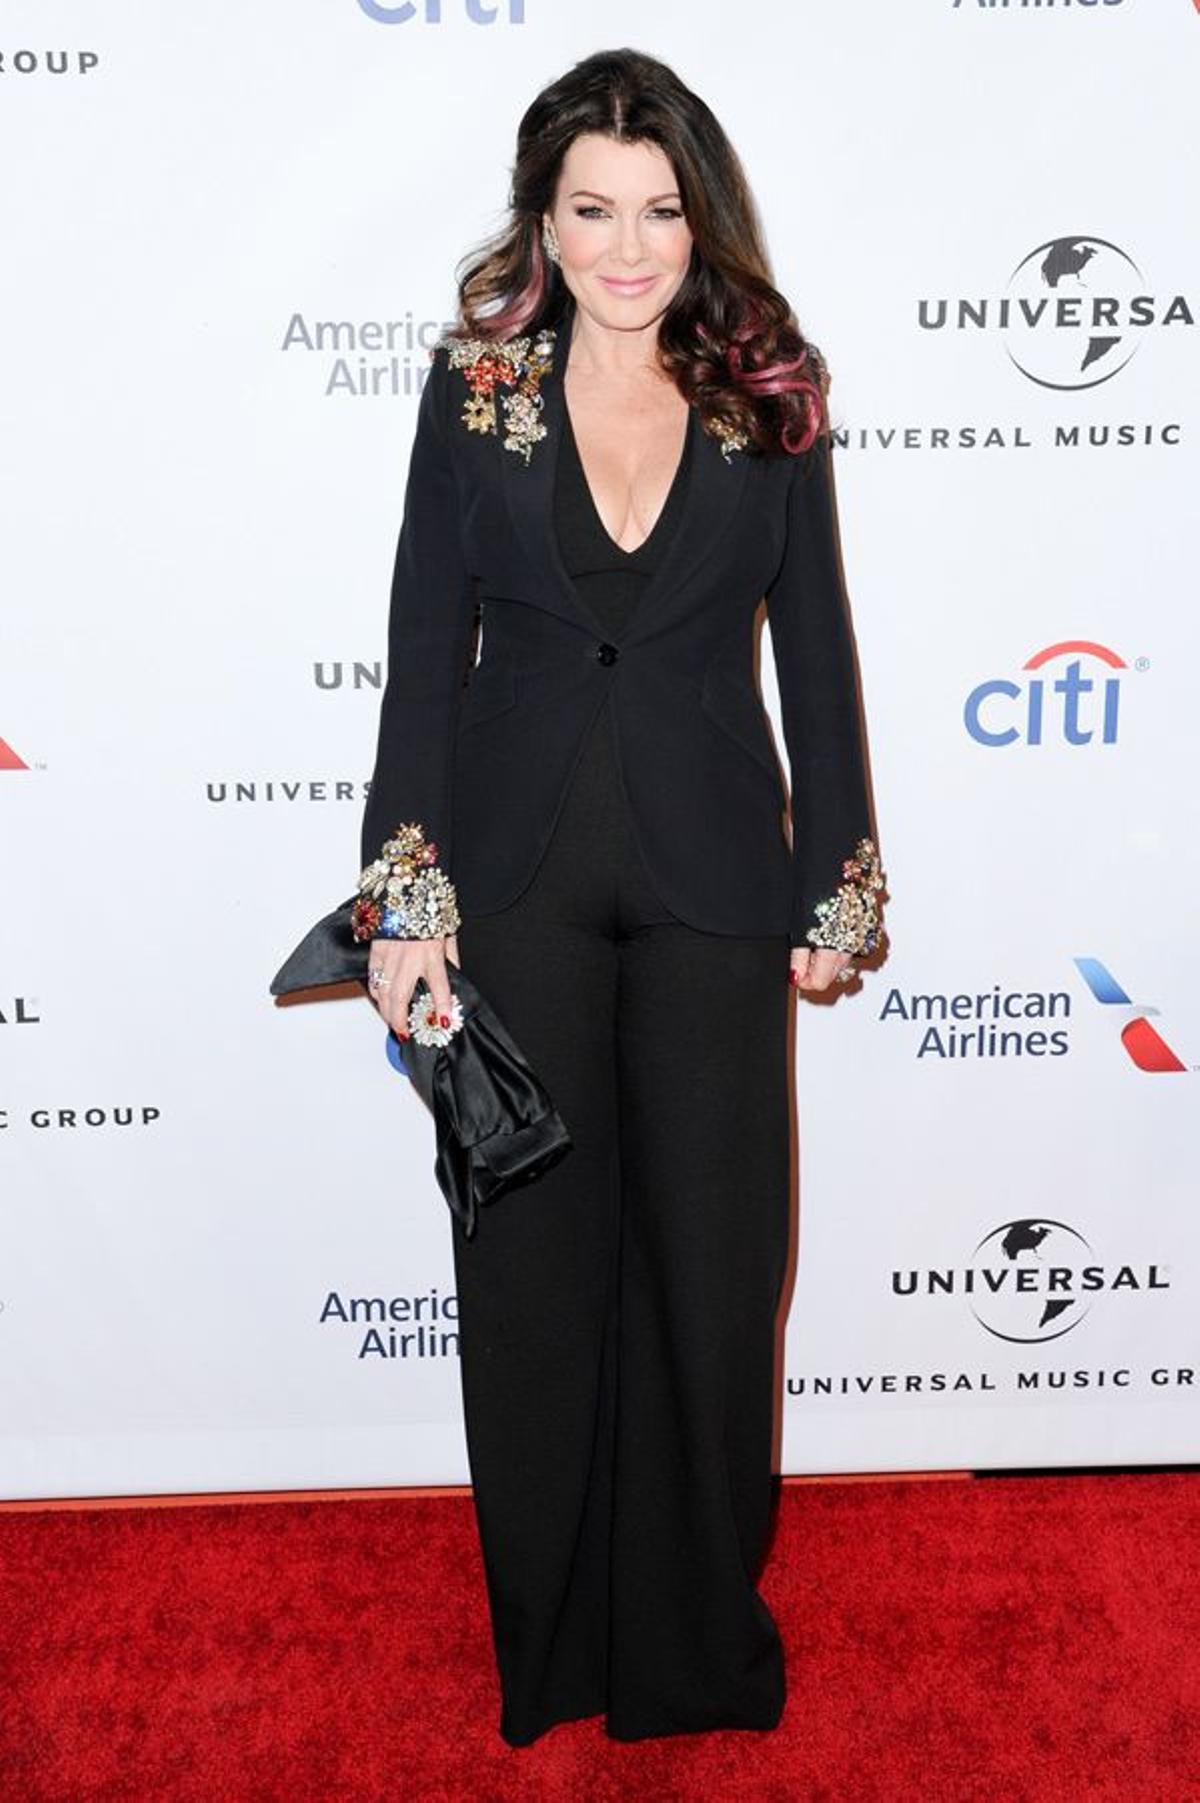 Lisa Vanderpump en la fiesta Universal Music Group tras los Grammy